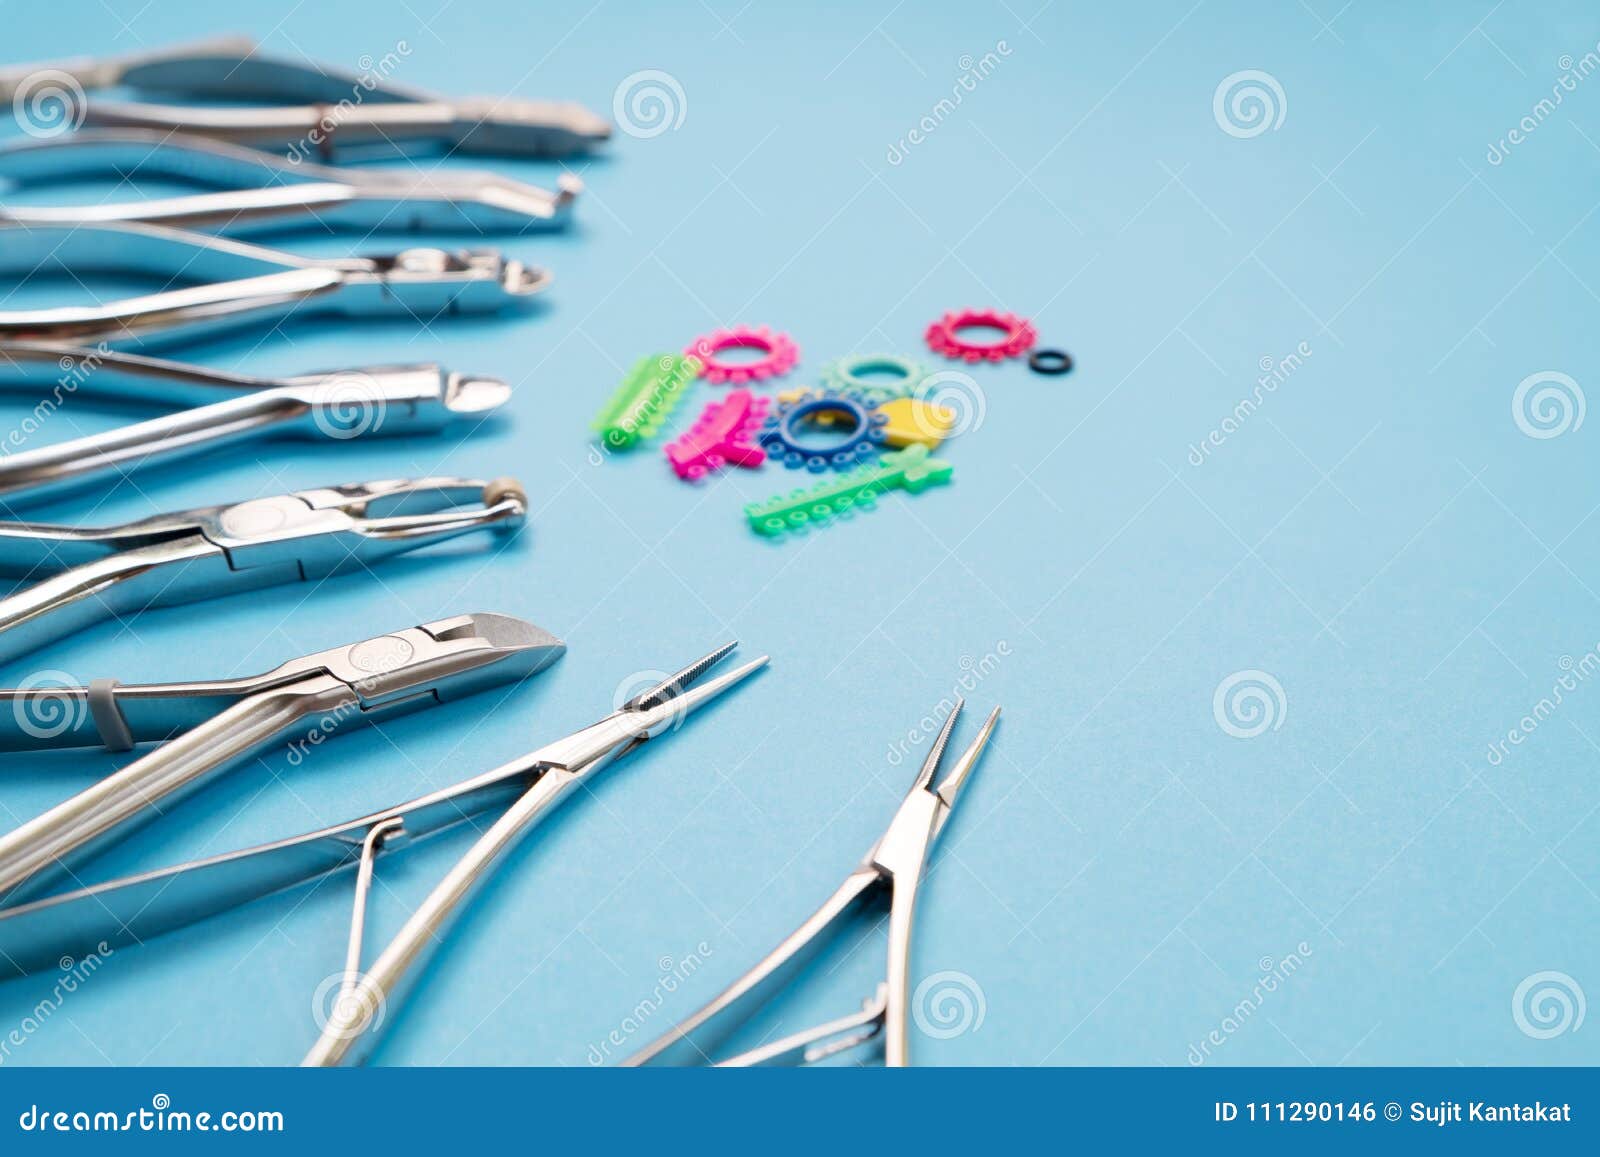 ортодонтические инструменты названия и фото для ассистента